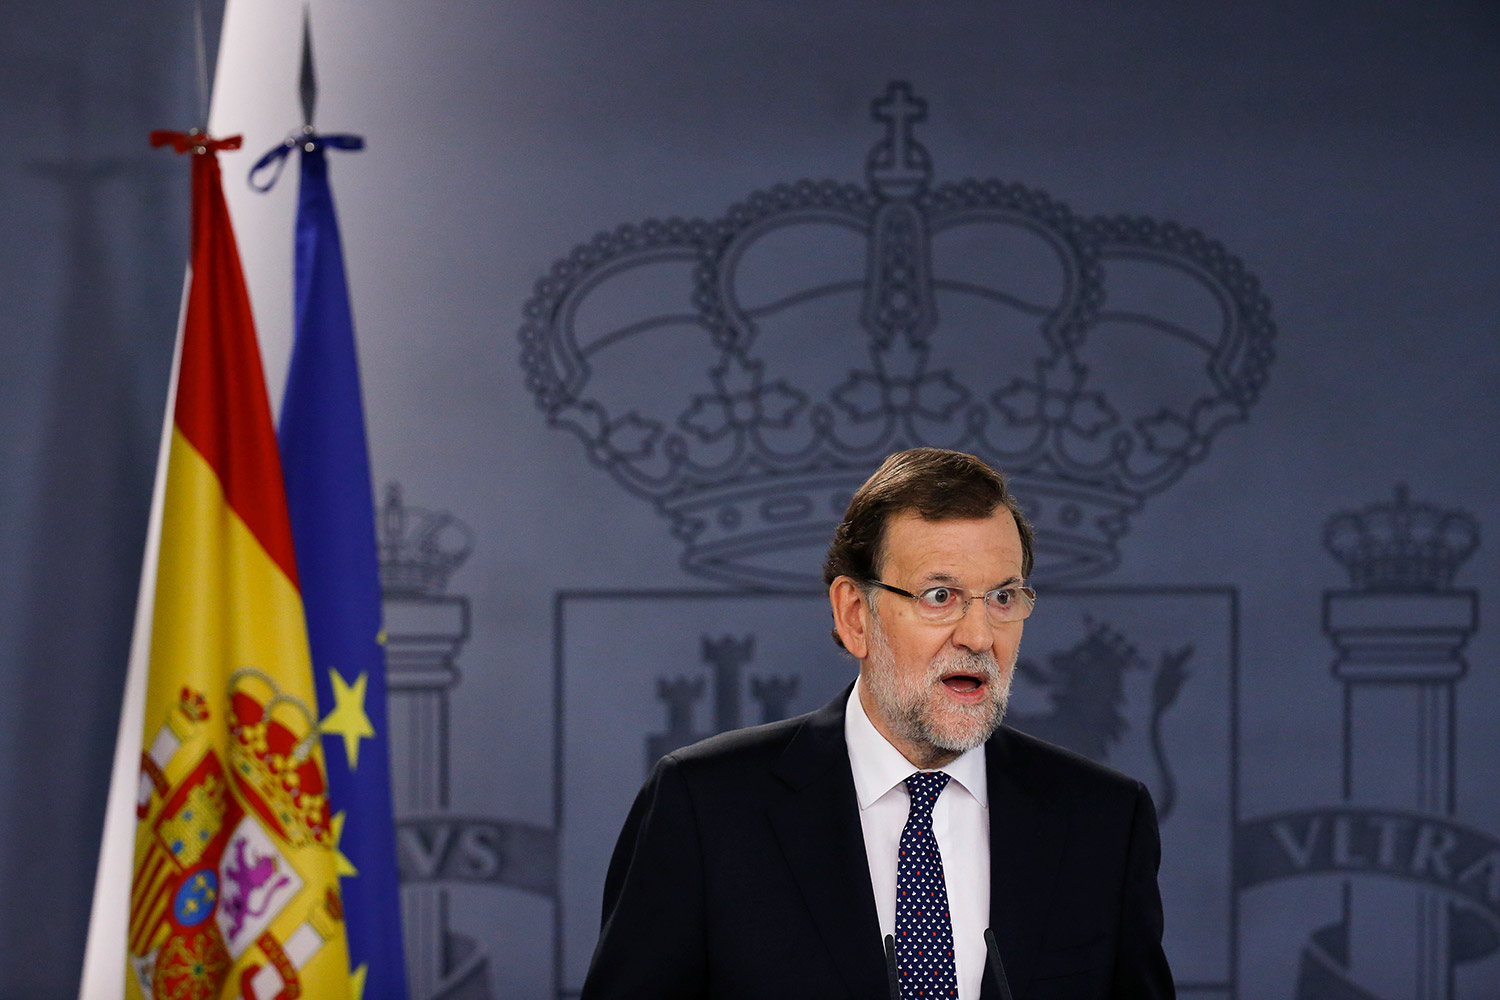 La explicación científica de los numerosos 'lapsus linguae' de Rajoy